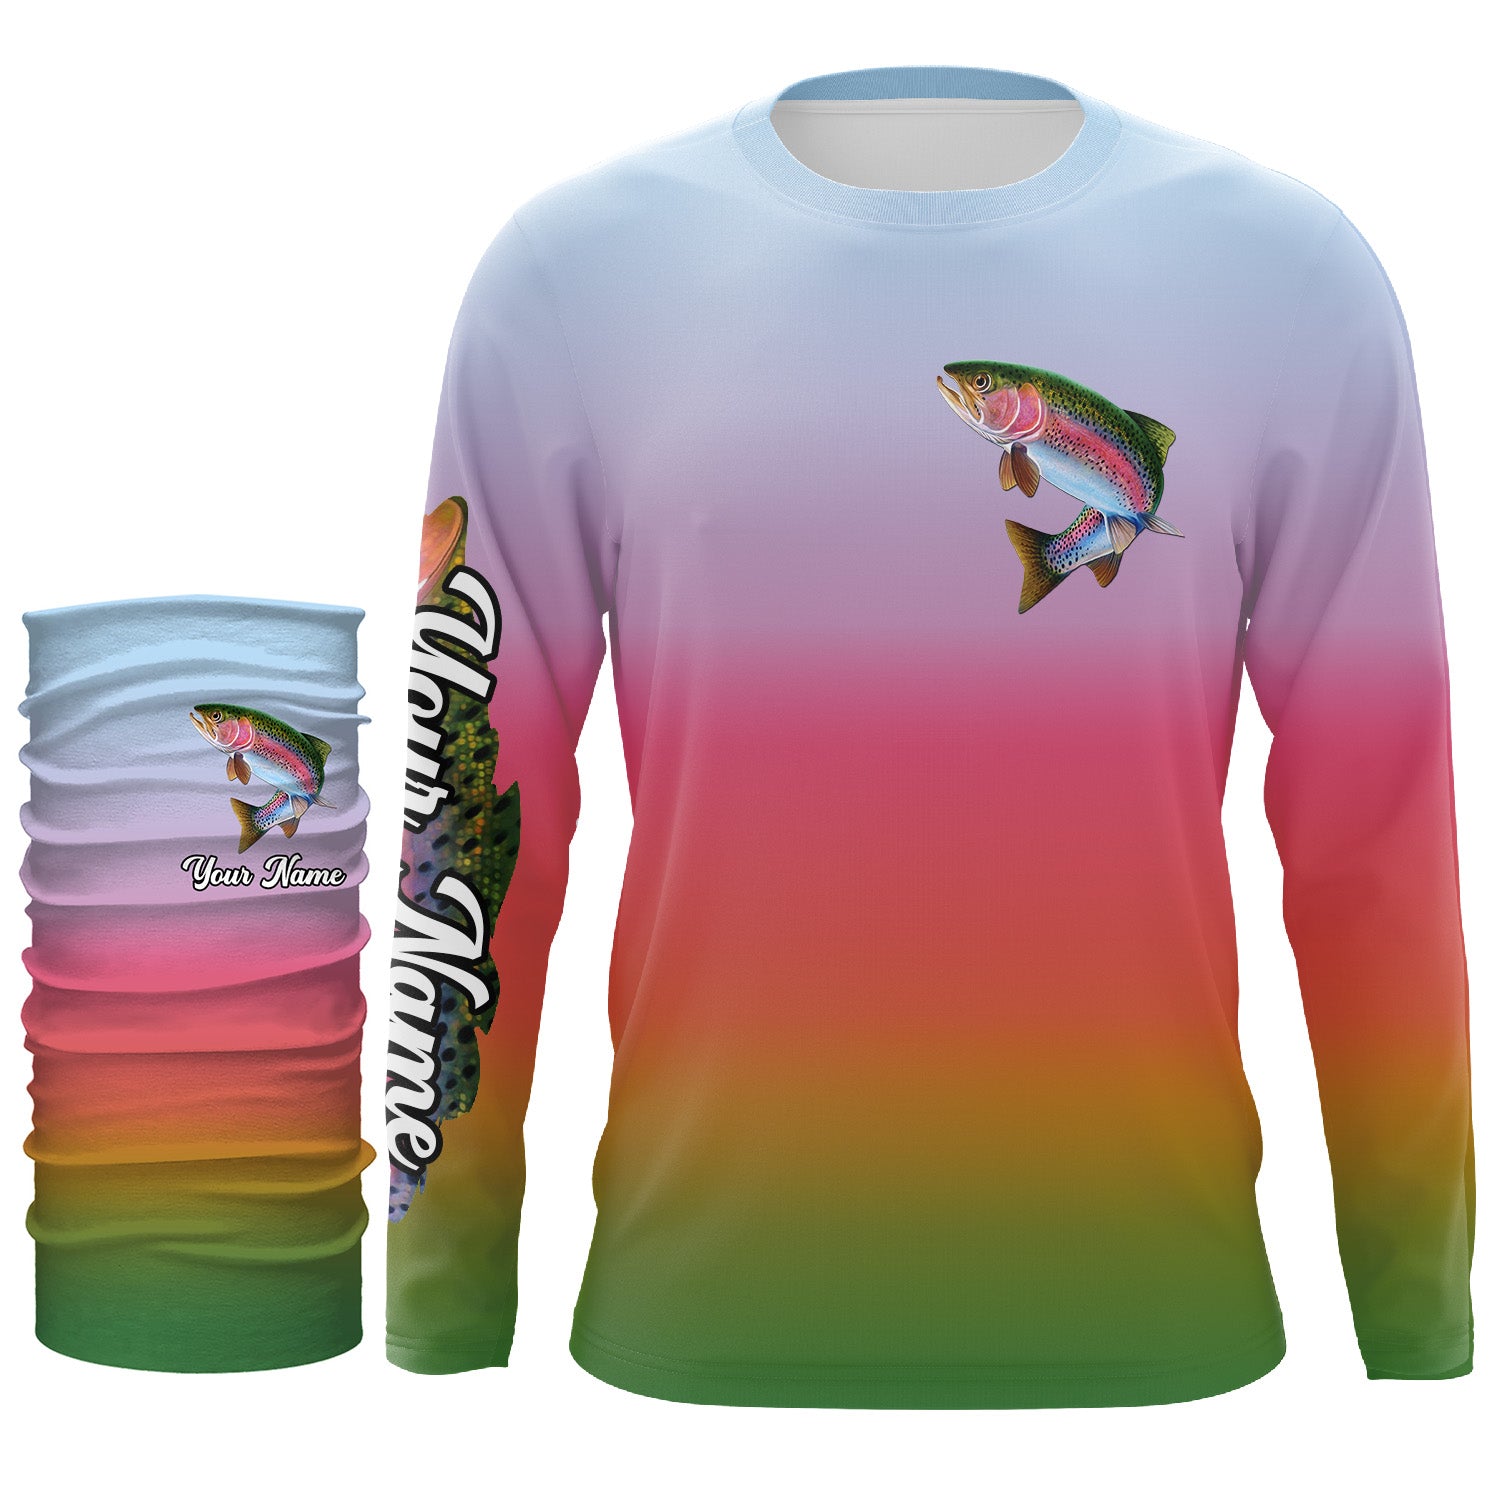 Trout Fisherman' Unisex Jersey T-Shirt